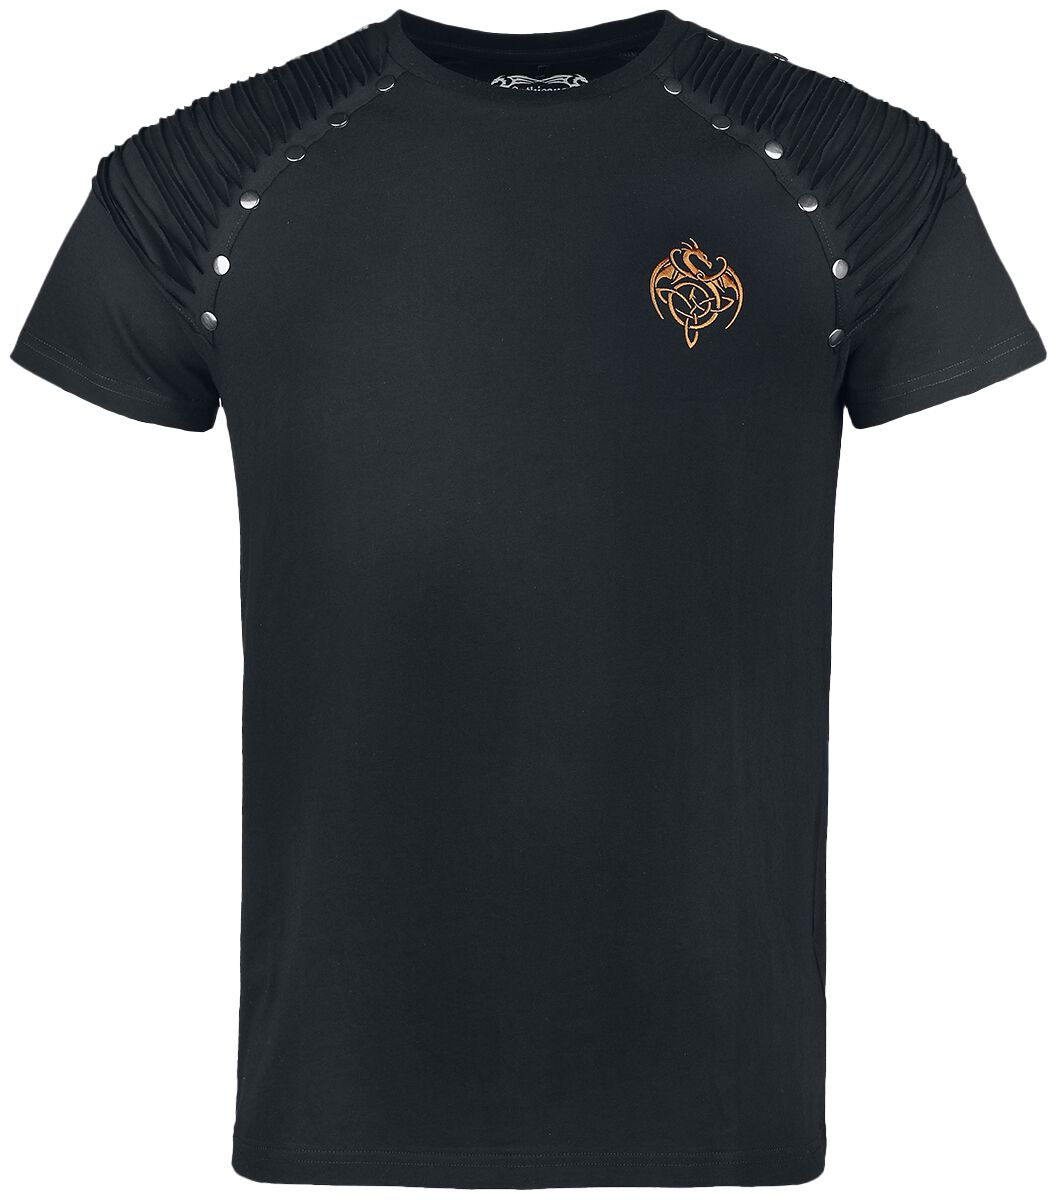 Gothicana by EMP - Gothic T-Shirt - Gothicana X Anne Stokes - Black T-Shirt With Large Dragon Print Backside - S bis 4XL - für Männer - Größe L - von Gothicana by EMP